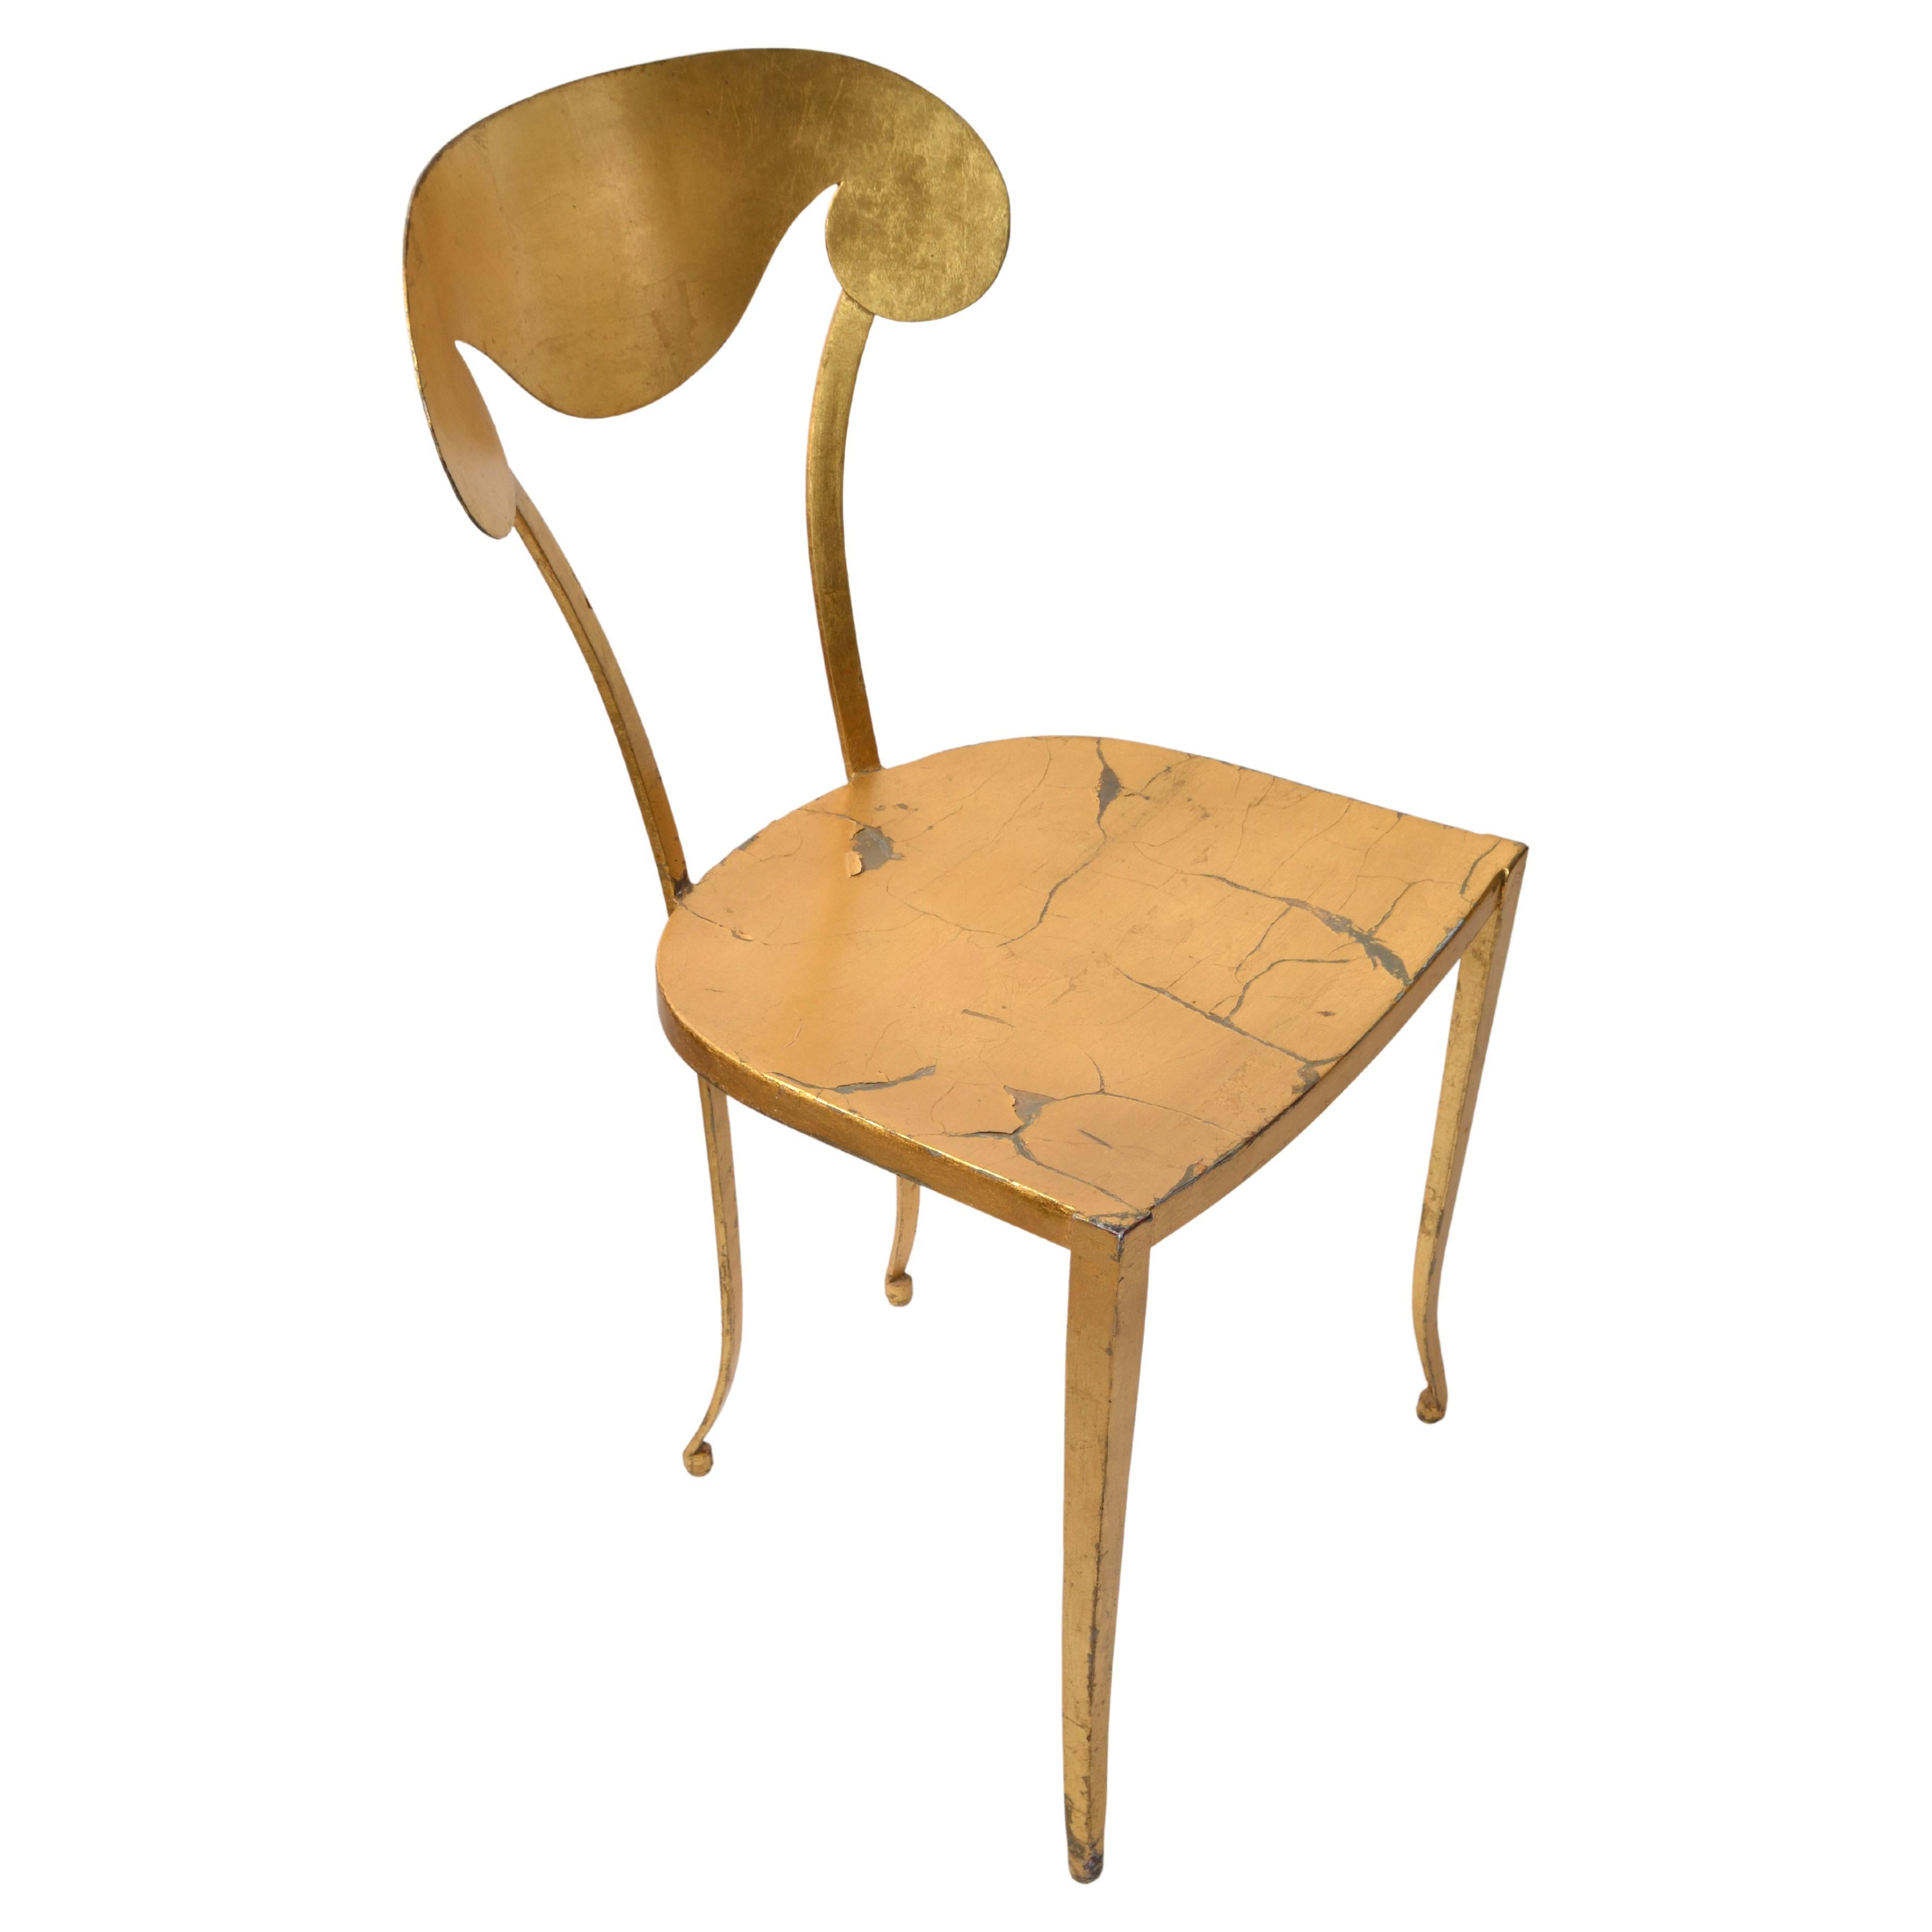 Artistic Italian Art Deco Style handbemalt und handgefertigt Blattgold Stahl Eitelkeit, Seite oder Schreibtisch Stuhl in notleidenden goldenen Finish. 
Die skulptural geformte Rückenlehne und die Beine machen diesen Side Chair sehr elegant.
Obwohl